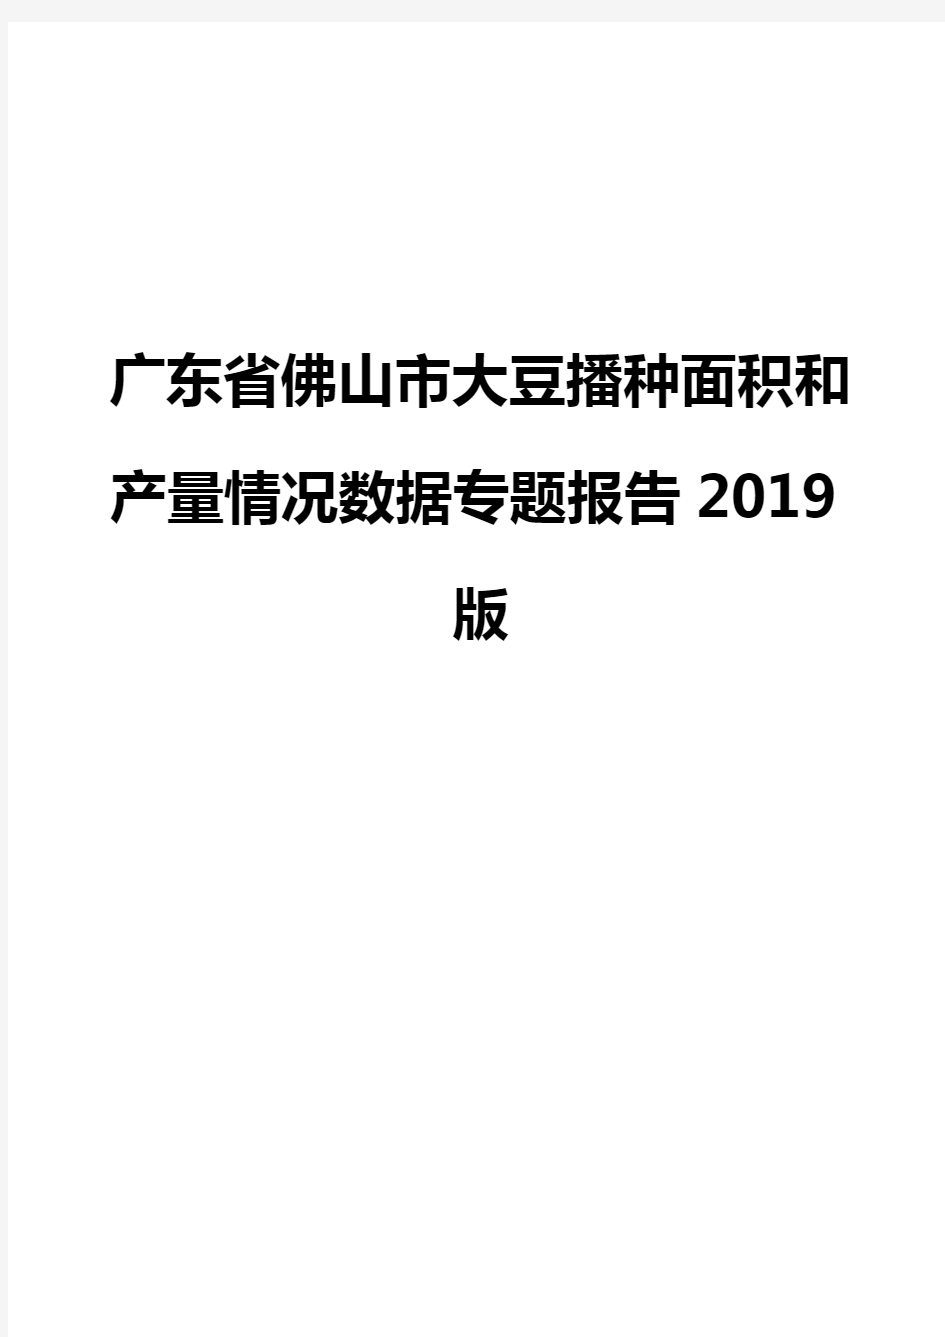 广东省佛山市大豆播种面积和产量情况数据专题报告2019版